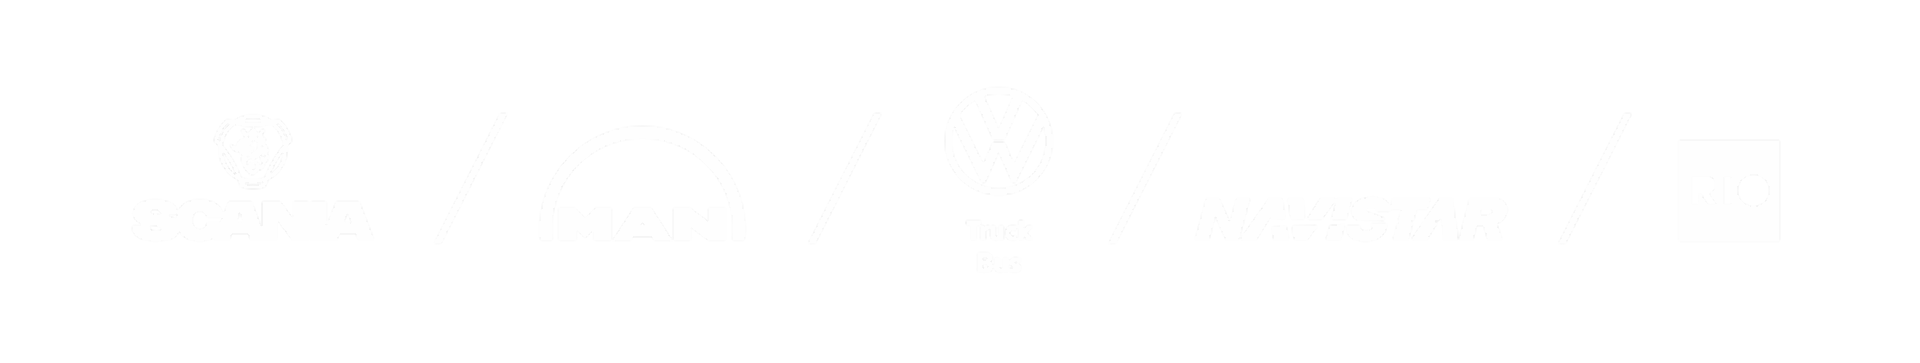 Die Logos der Marken MAN, Scania, Caminhões Ônibus und RIO werden in weiß auf einem grauen Hintergrund abgebildet